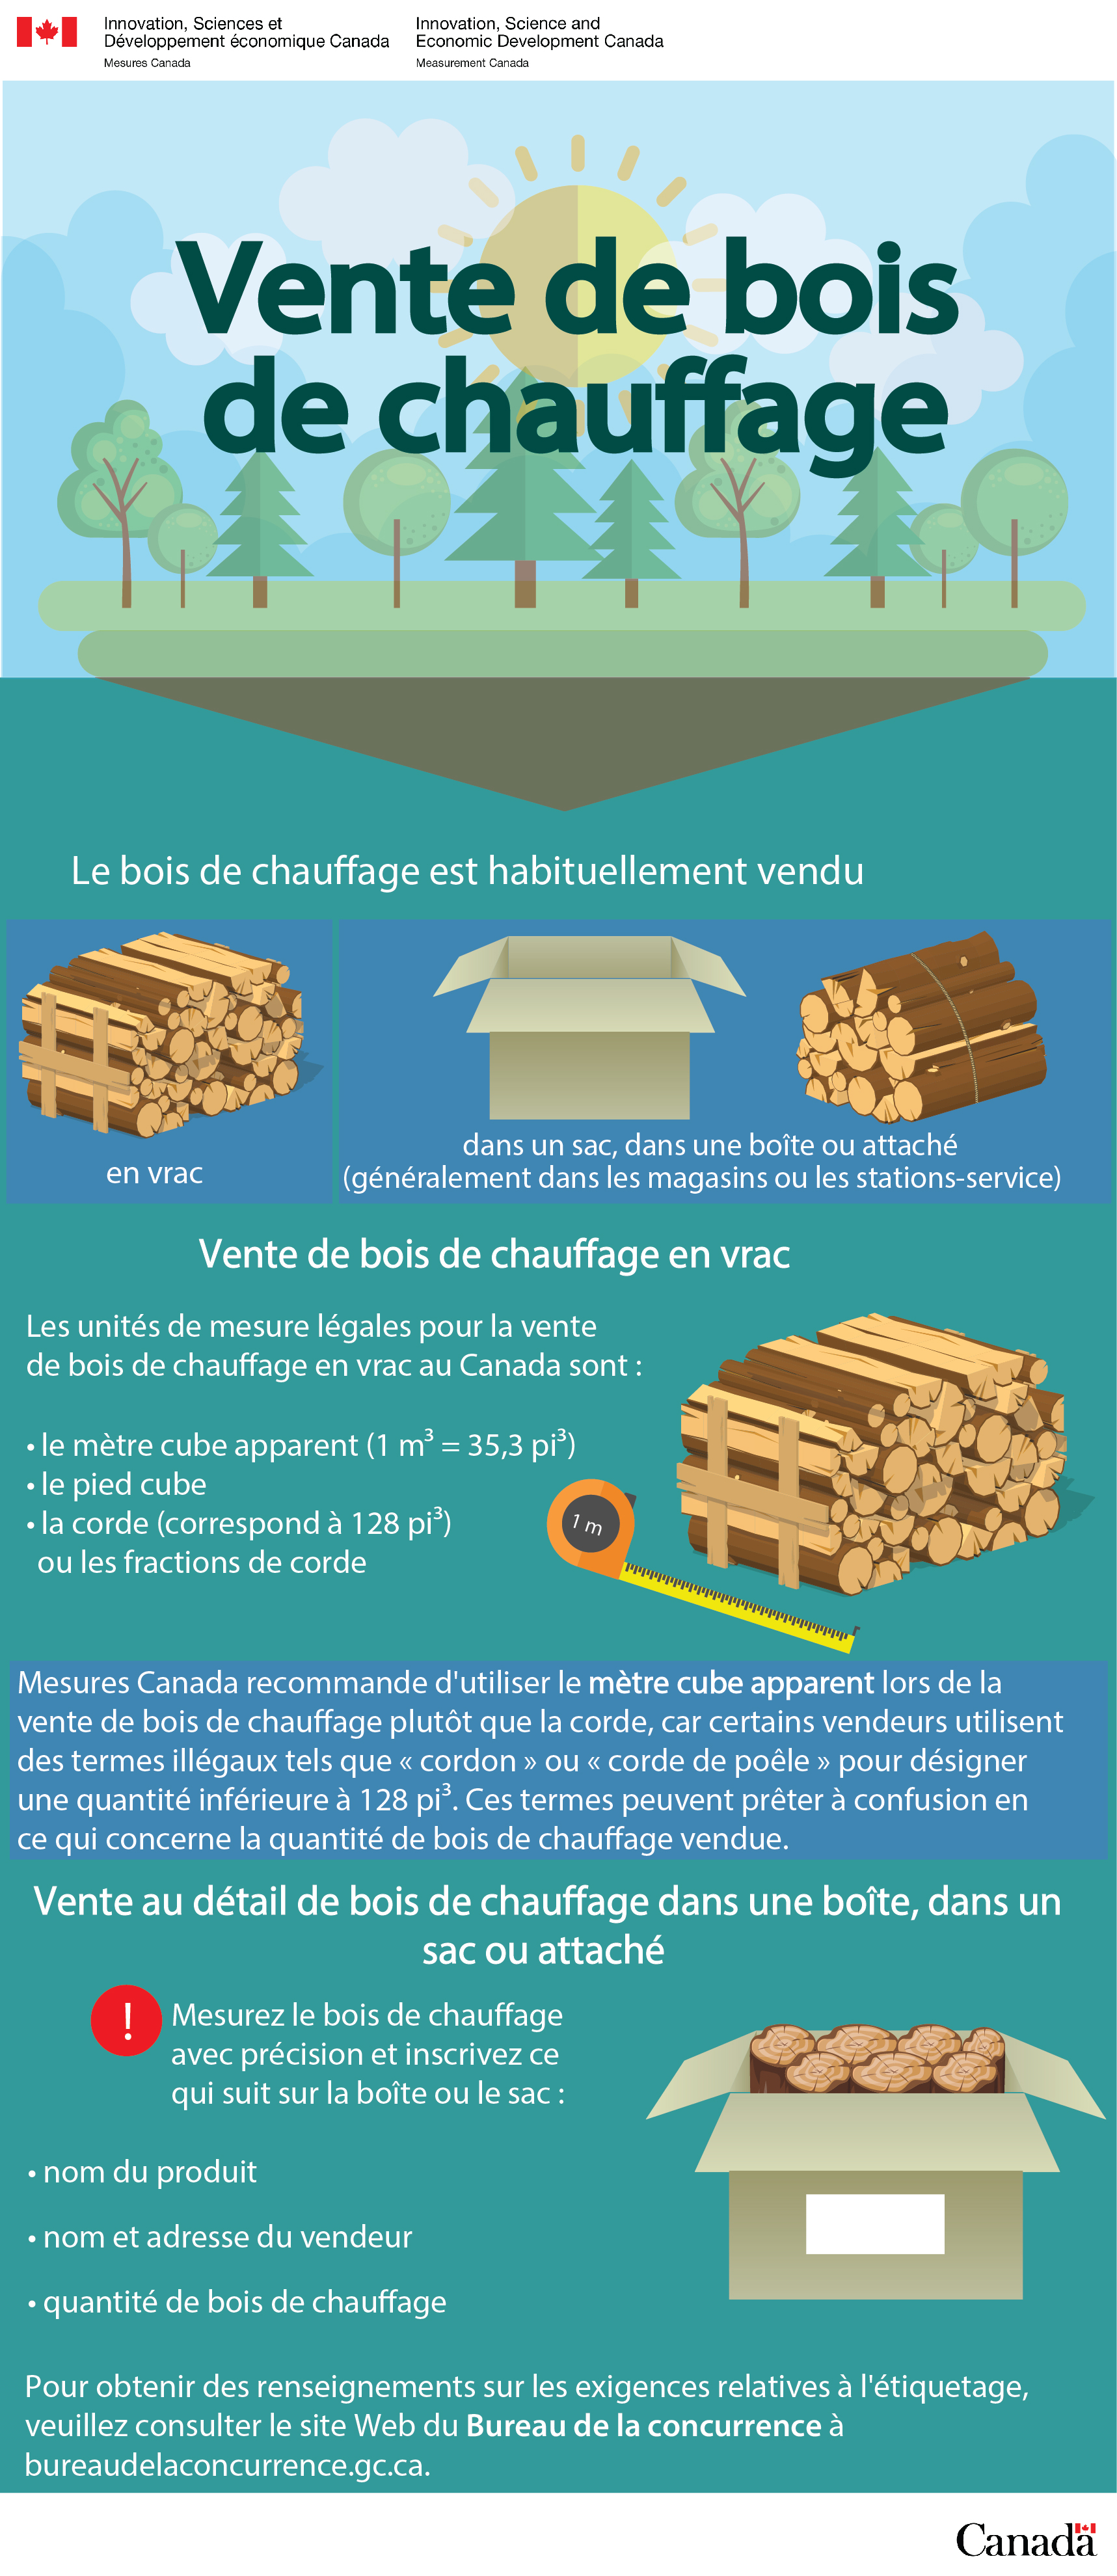 Vente de bois de chauffage (la description détaillée se trouve sous l'image)